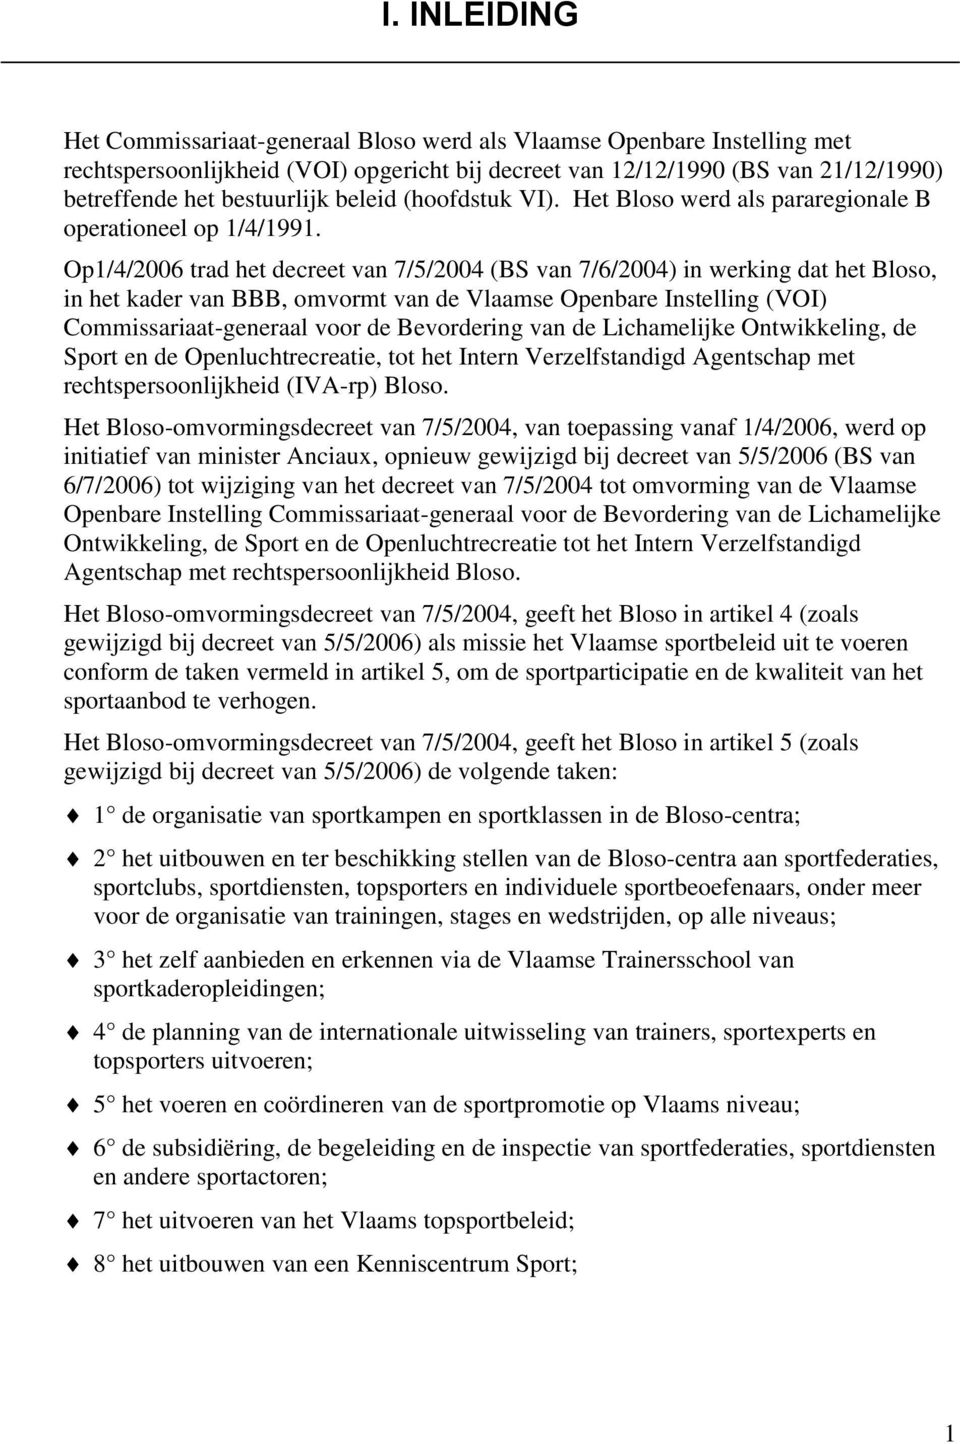 Op1/4/2006 trad het decreet van 7/5/2004 (BS van 7/6/2004) in werking dat het Bloso, in het kader van BBB, omvormt van de Vlaamse Openbare Instelling (VOI) Commissariaat-generaal voor de Bevordering